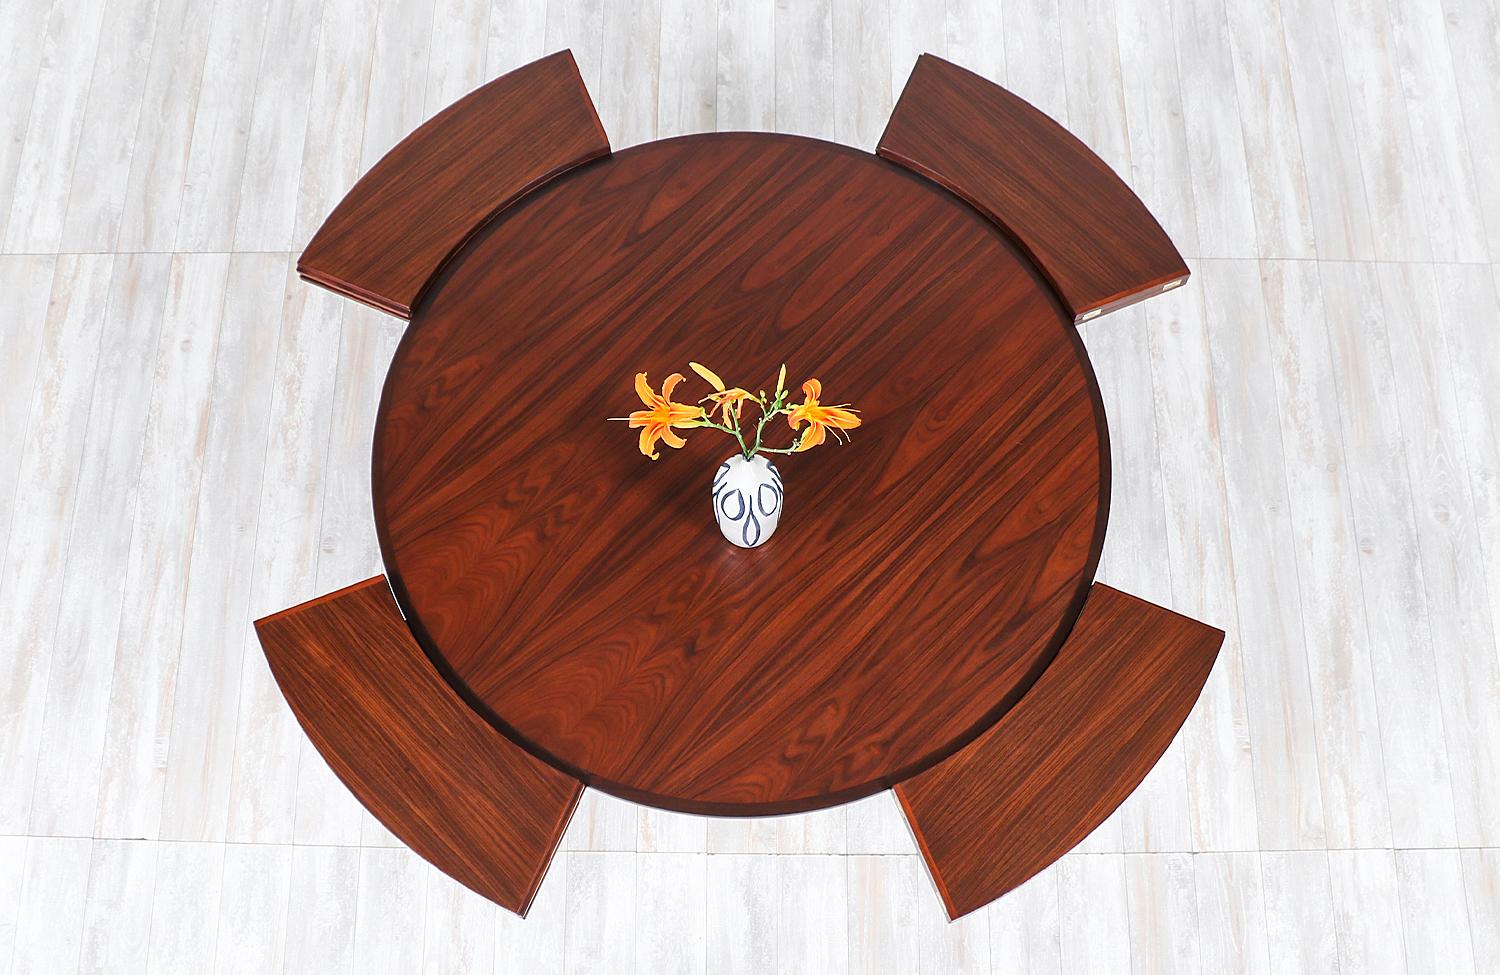 Wood Danish Modern “Flip-Flap” Rosewood Dining Table by Dyrlund